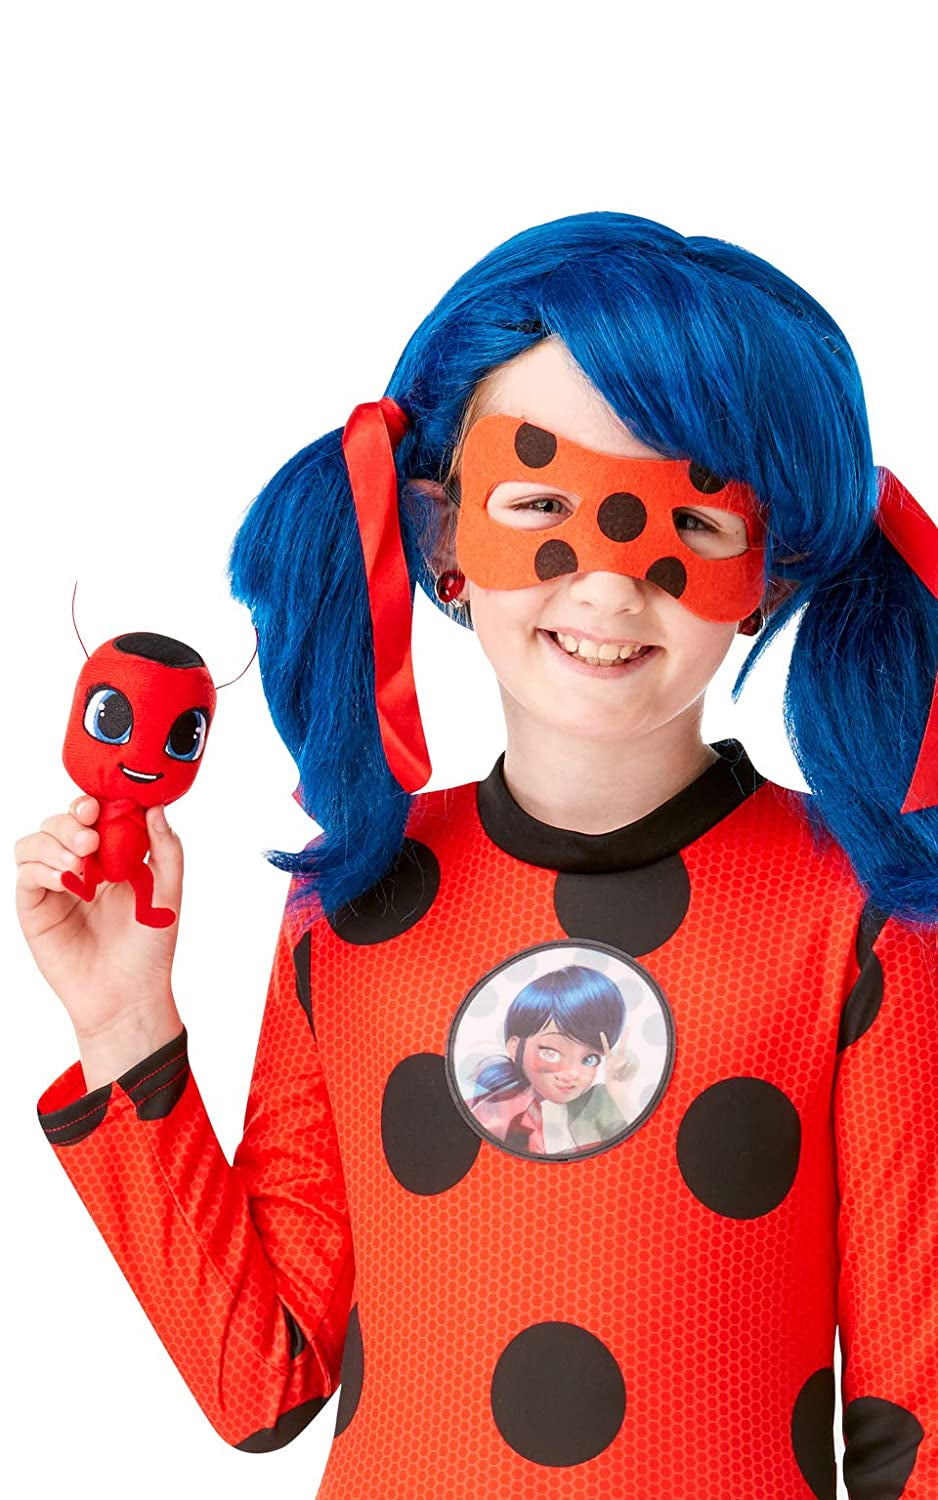 TV Show Girls Deluxe Miraculous Ladybug Costume